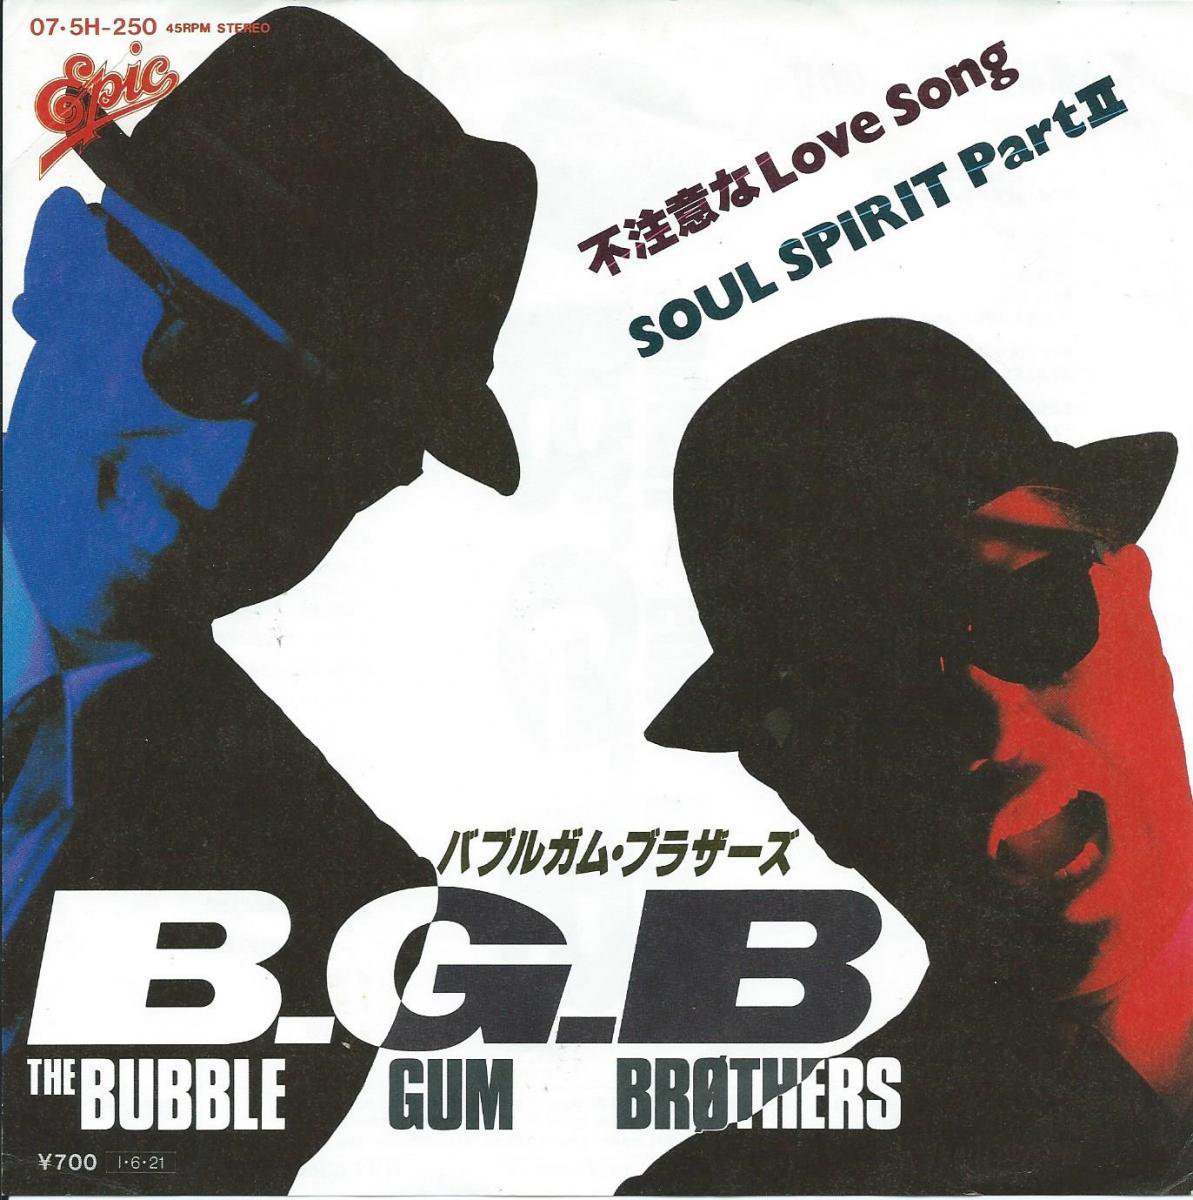 バブルガム・ブラザーズ THE BUBBLE GUM BROTHERS (B.G.B.) / 不注意なLOVE SONG / SOUL SPIRIT  PART II (7") - HIP TANK RECORDS